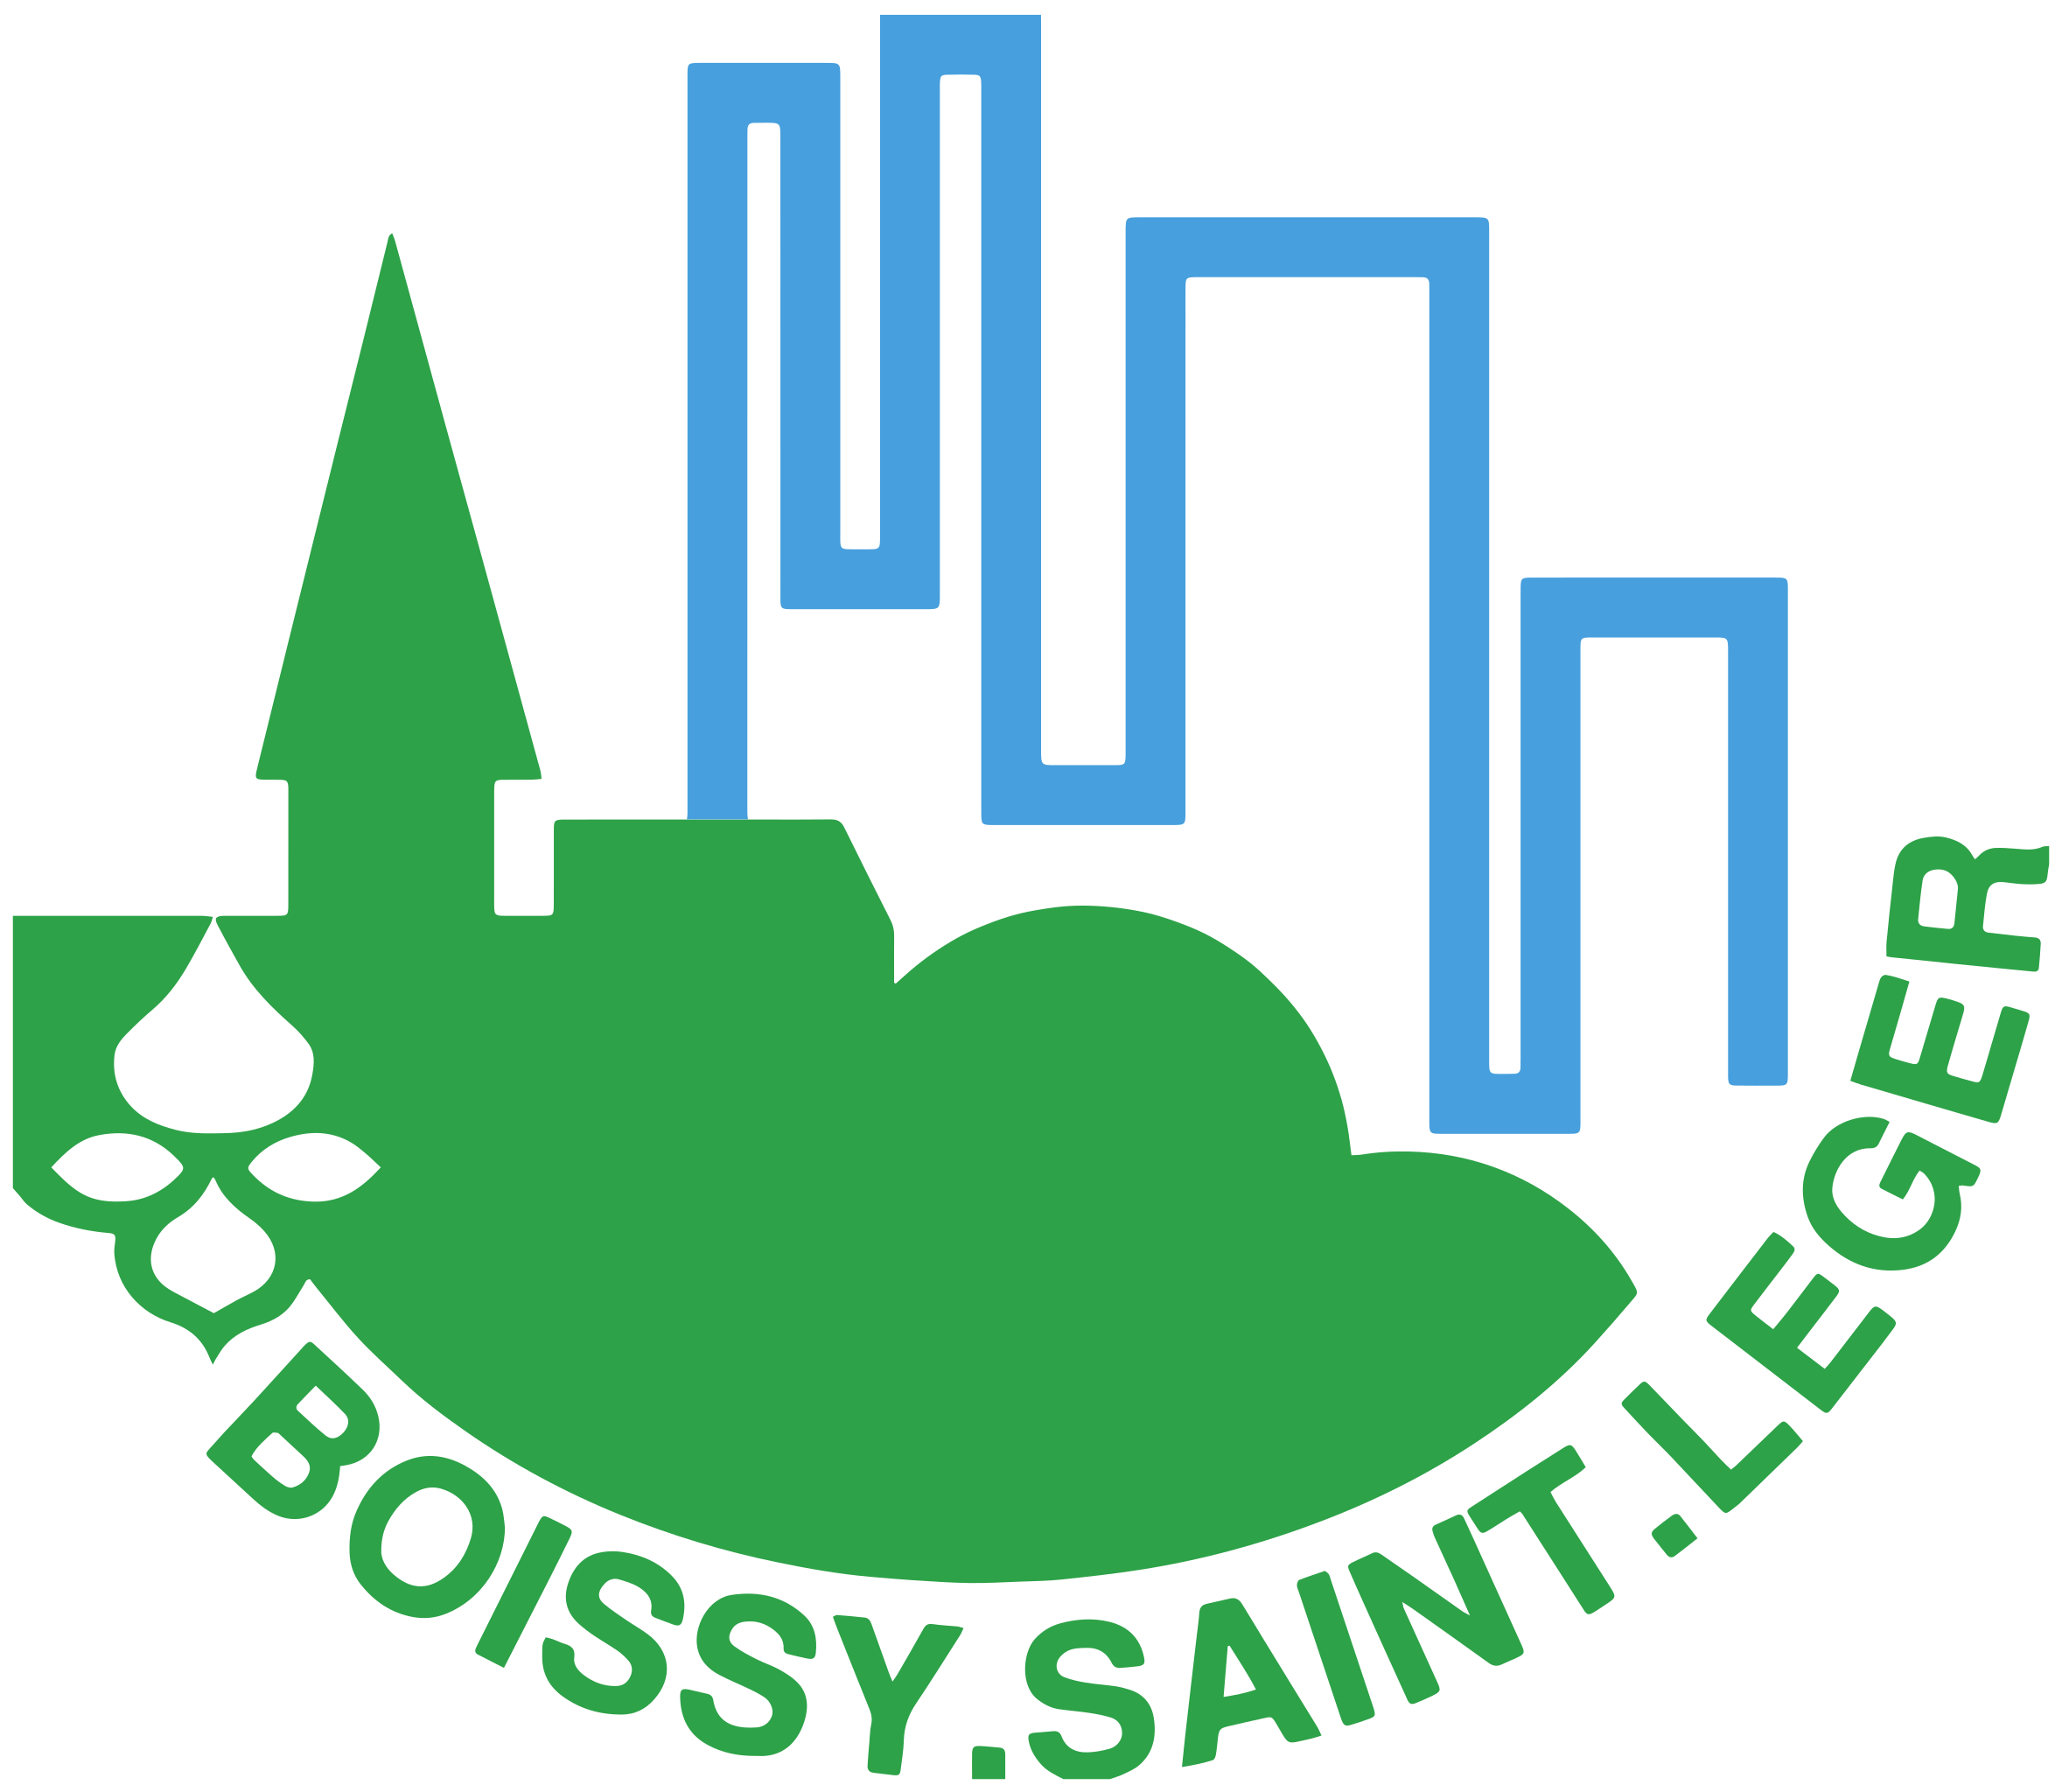 Pompes Funèbres LOIC Logo ville de Boissy-Saint-Leger Concession cimetière de Boissy-Saint-Léger